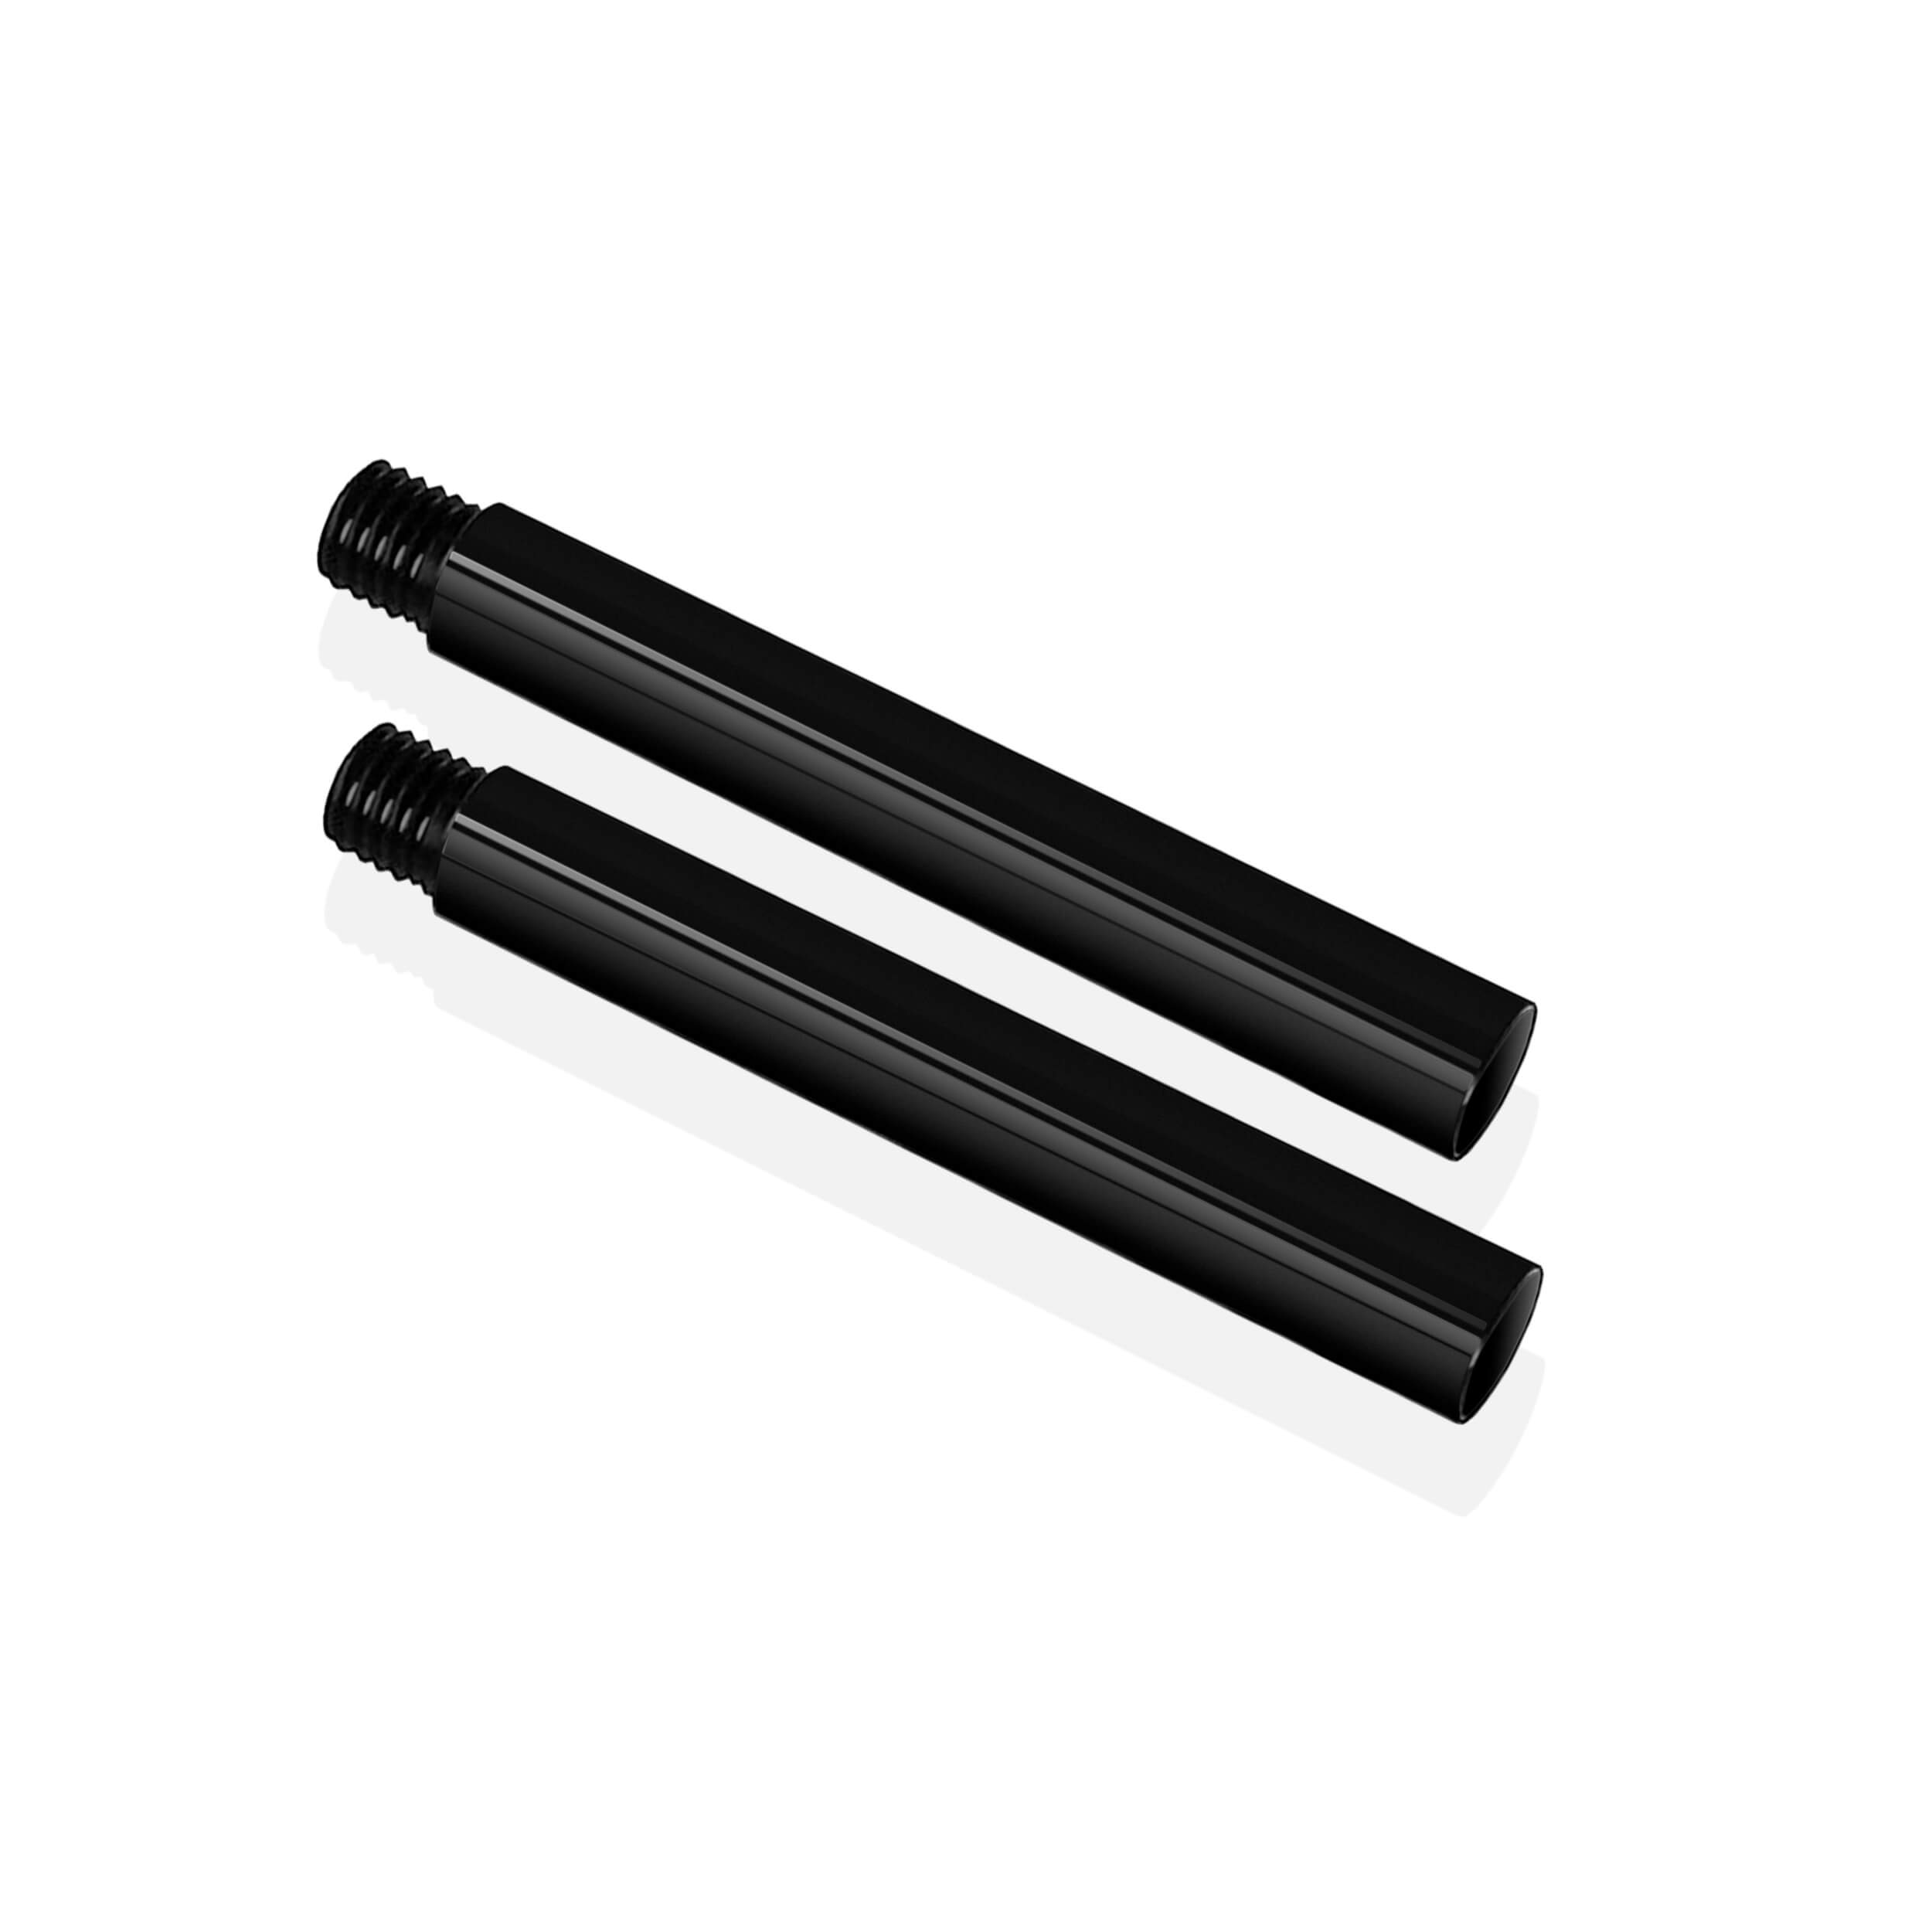 SHAPE 15mm Extension Rods (Pair, Black, 4")